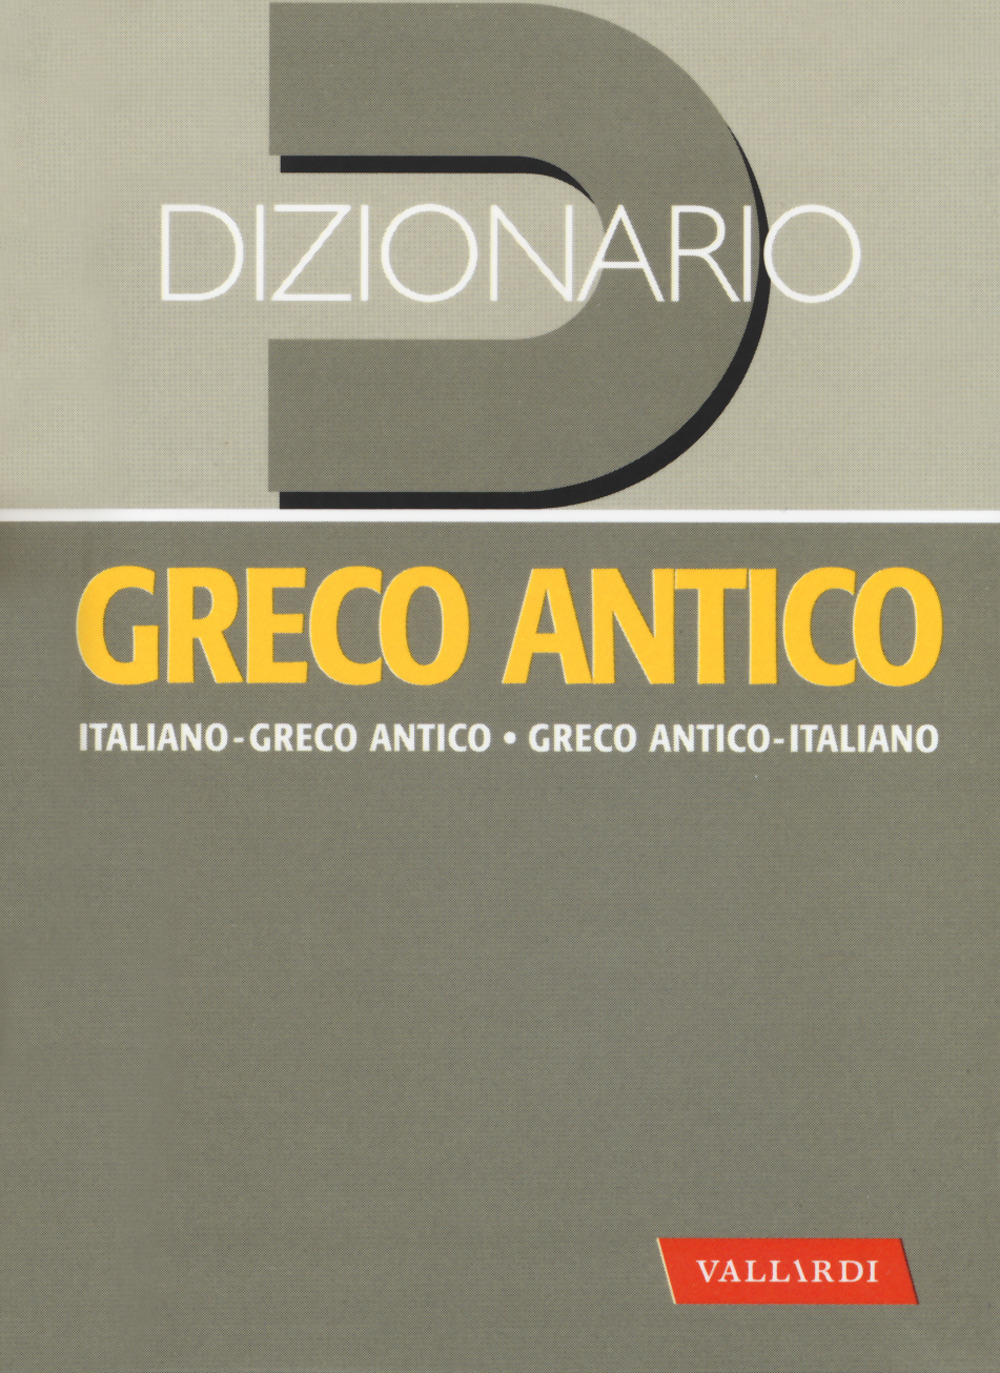 Image of Dizionario greco antico. Greco antico-italiano, italiano-greco antico